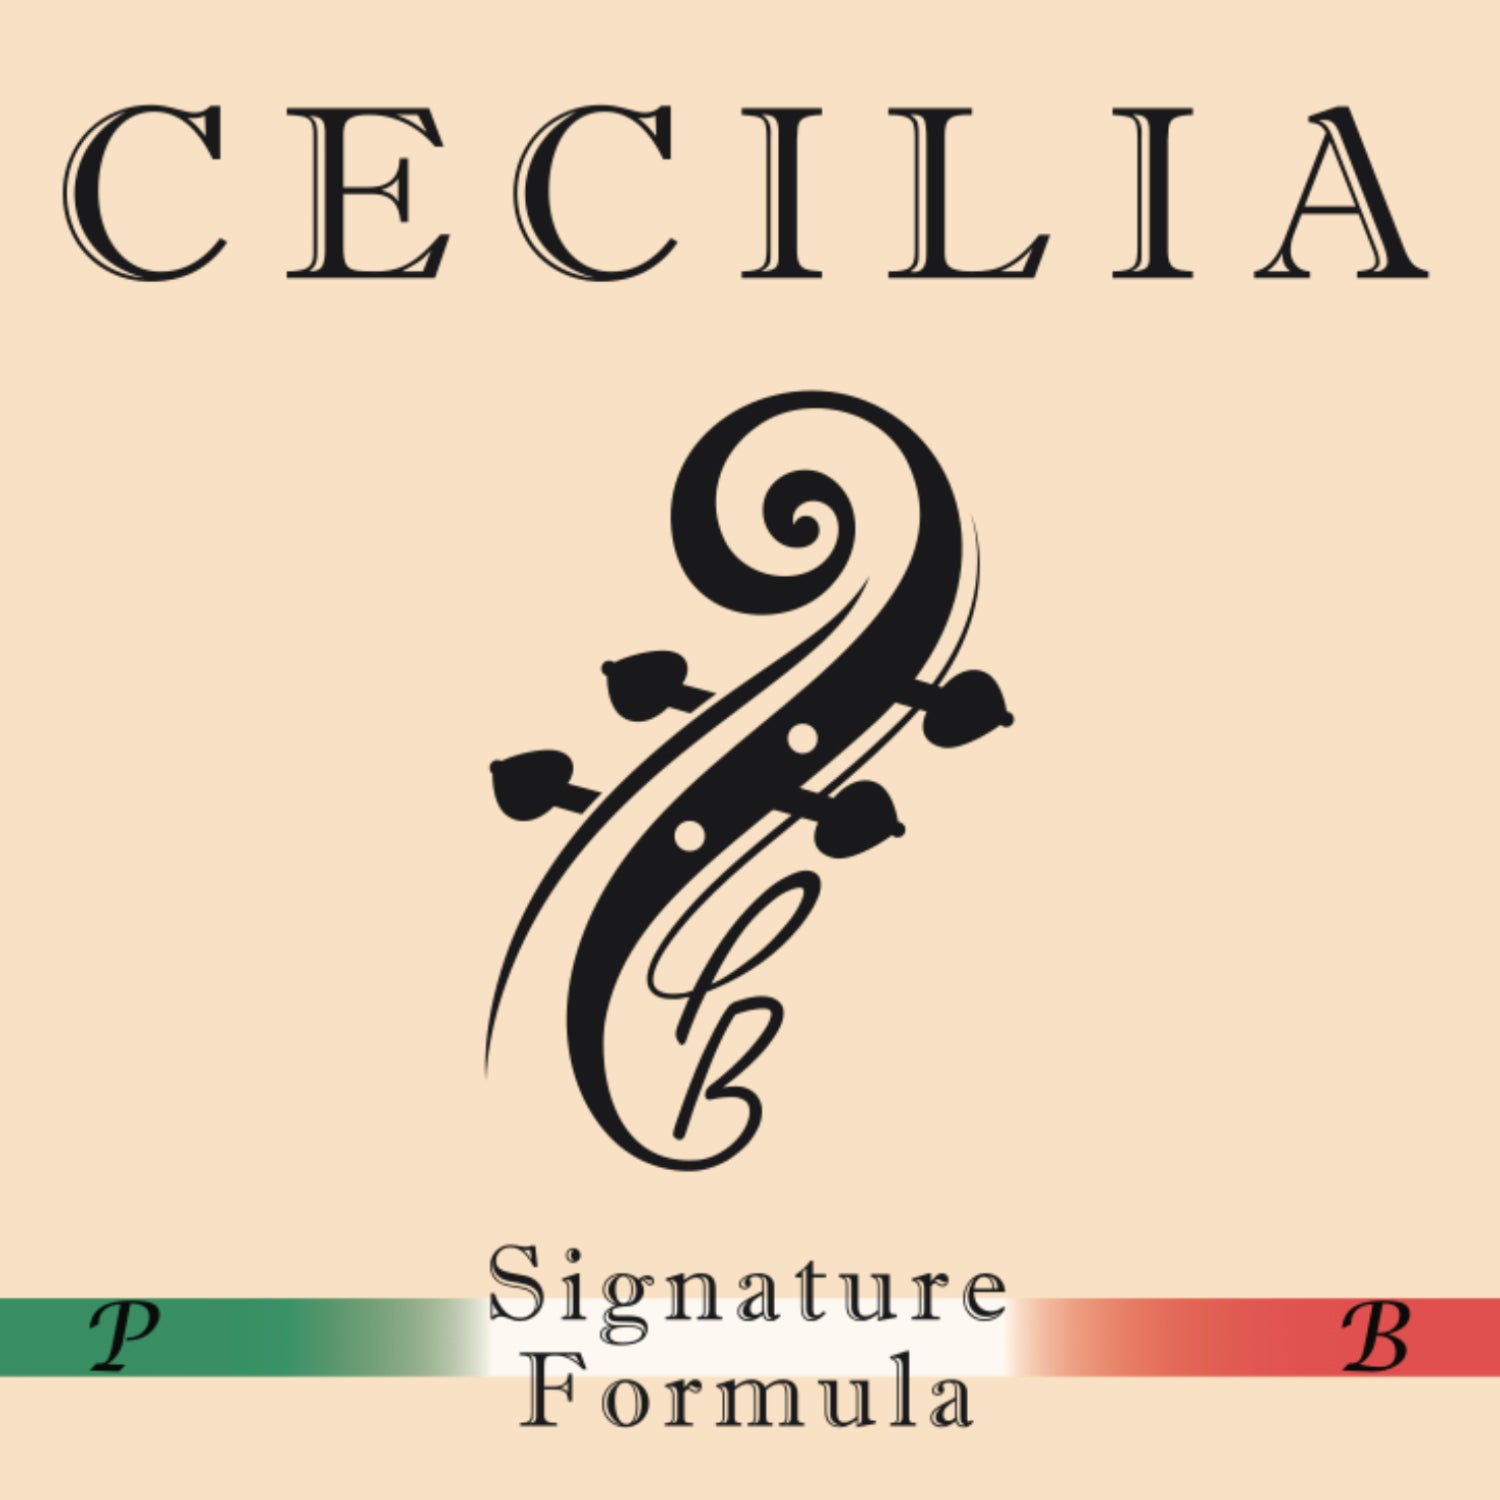 CECILIA Signature Formula Cello